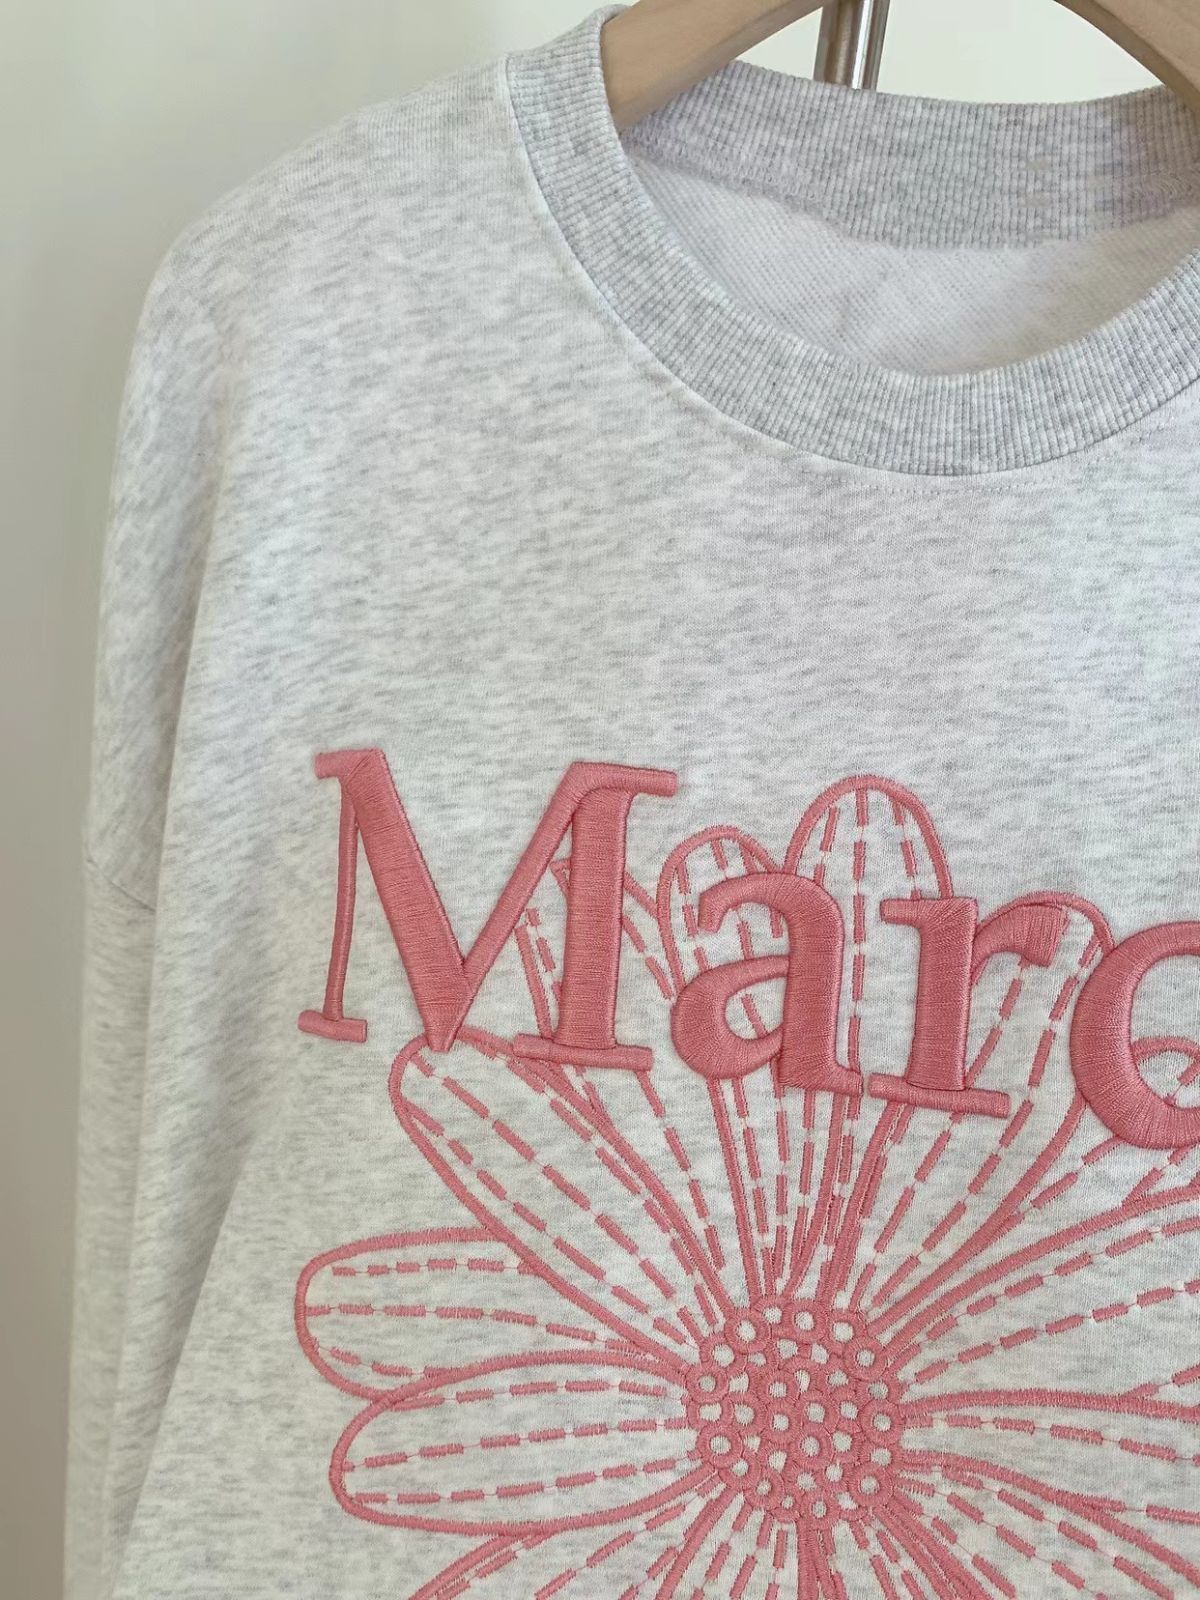 マルディメクルディ Mardi Mercredi トレーナー スウェット 刺繍 ...